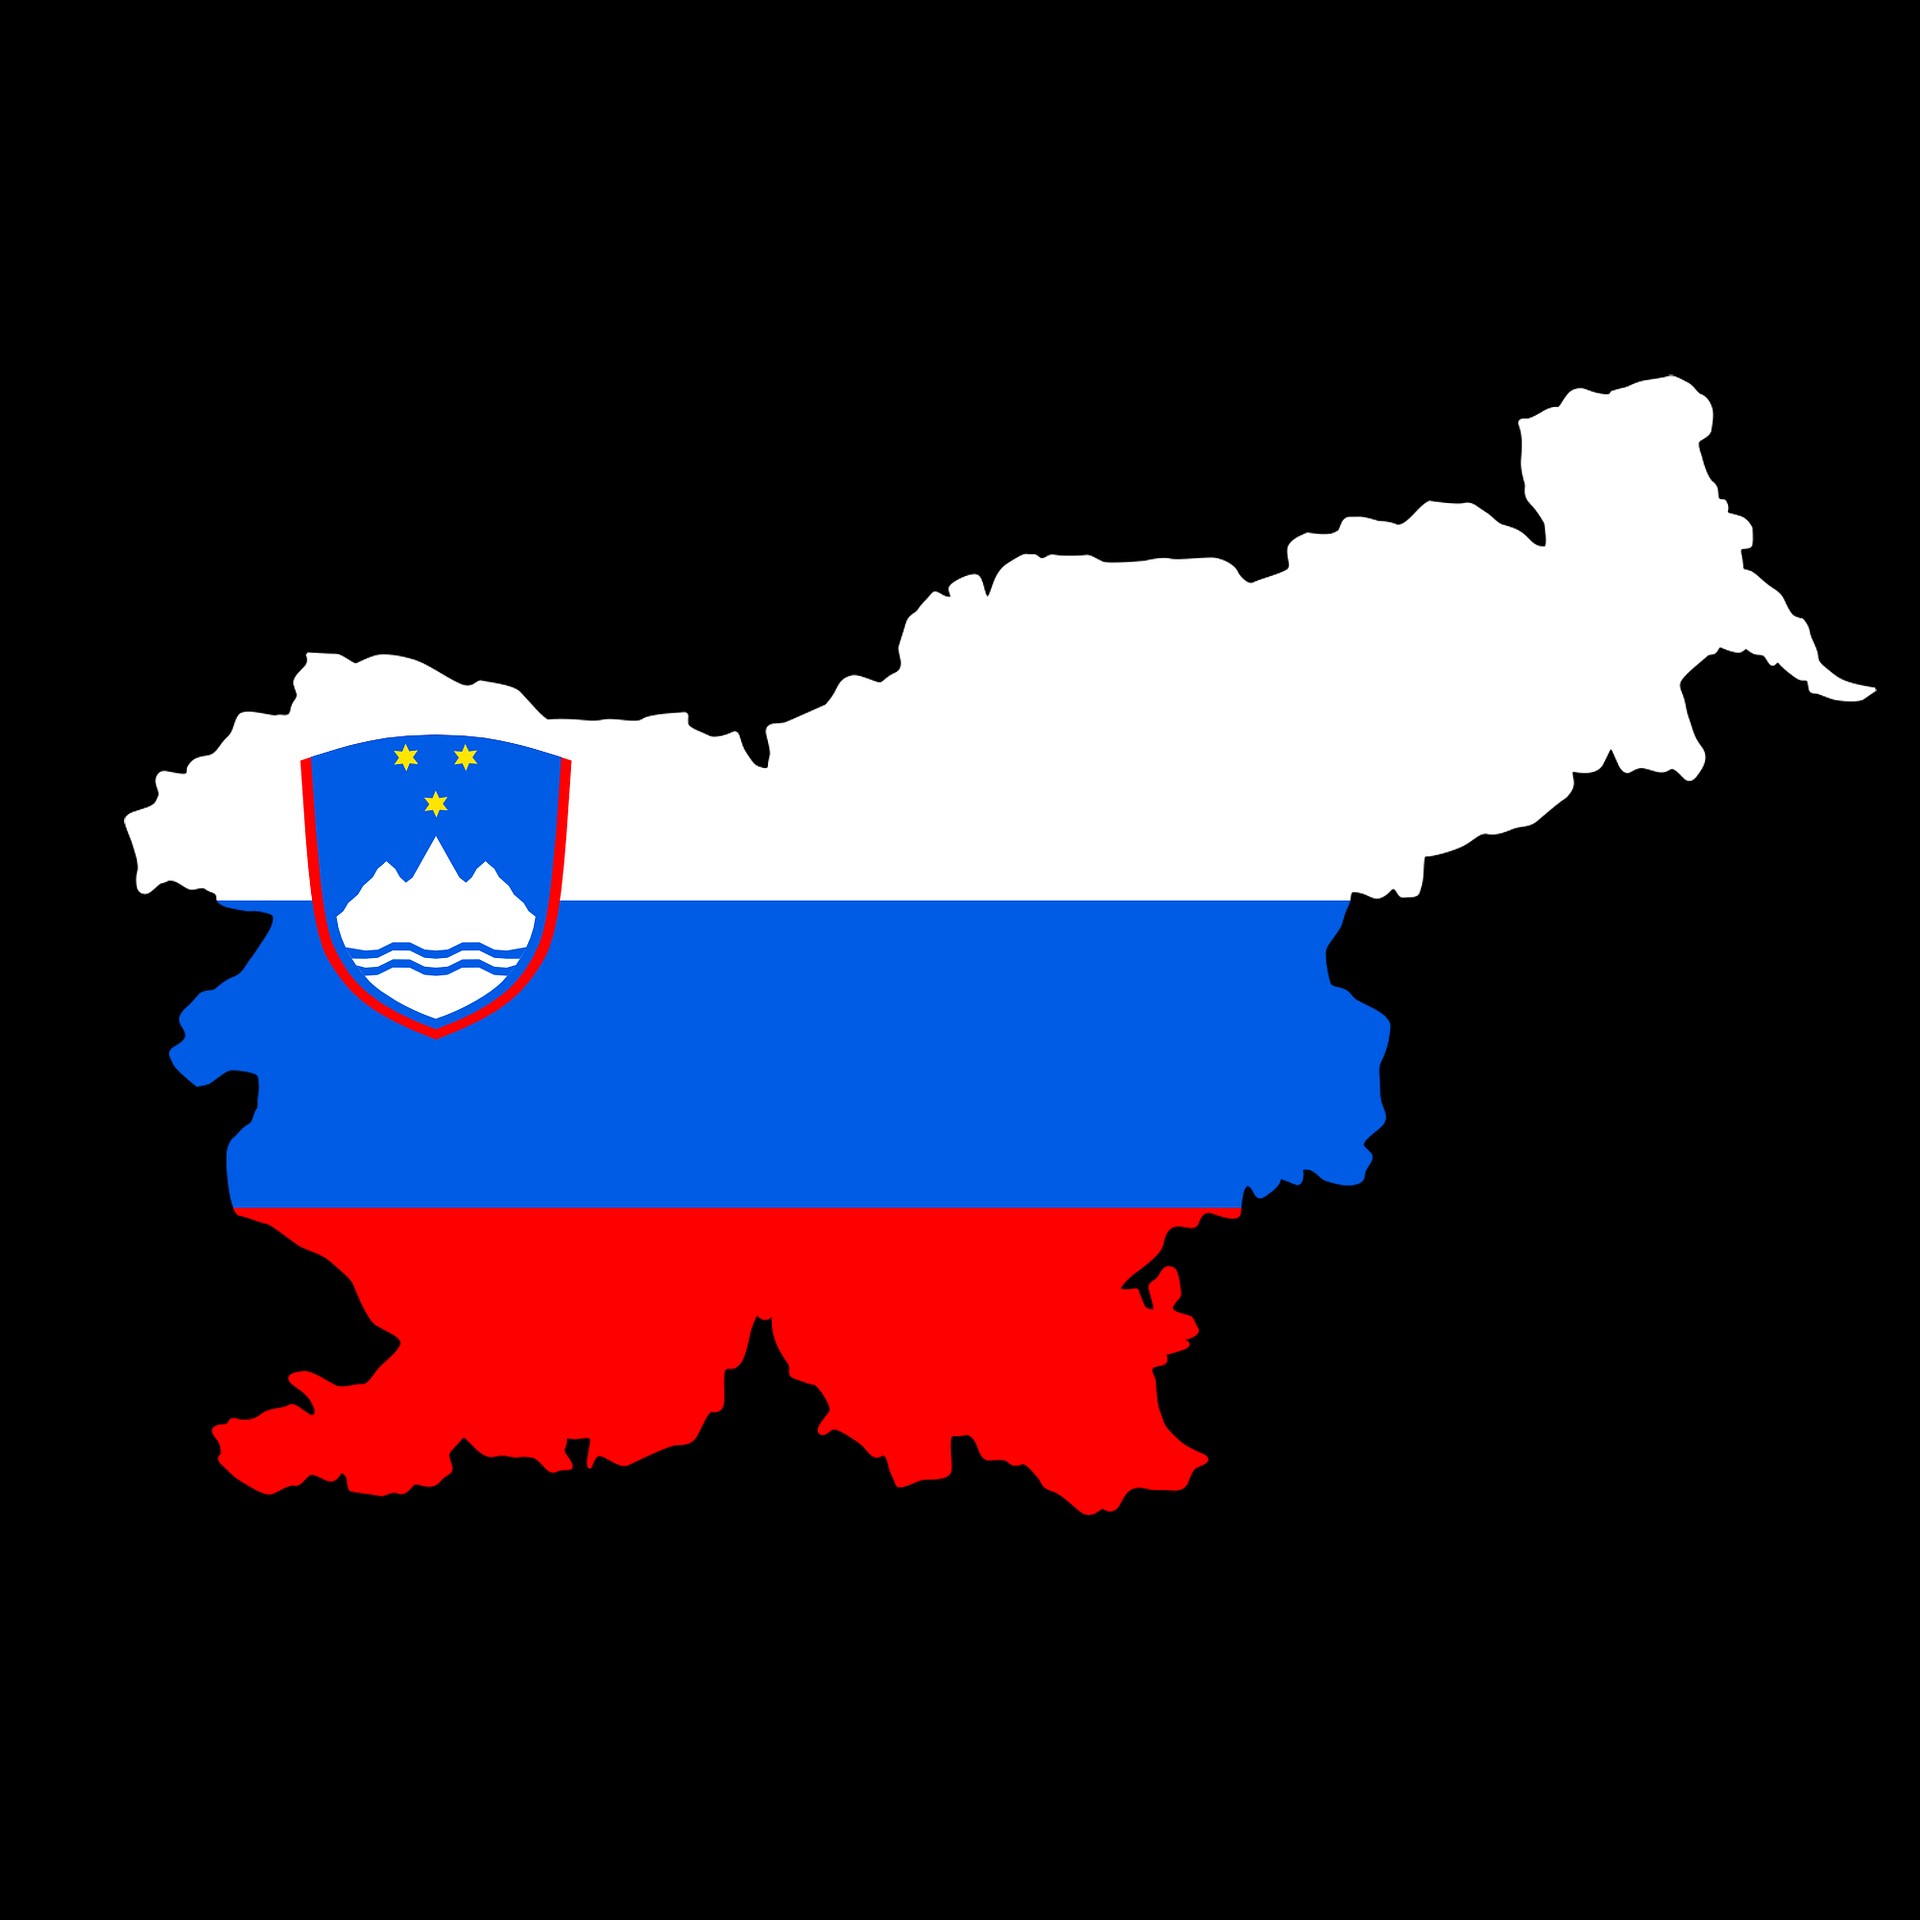 Expat Slovenia SBI TOP UCITS ETF (SLQX ETF) är en börshandlad fond som följer utvecklingen av SBI TOP Index på Ljubljanabörsen, med hjälp av den direkta fysiska replikeringsmetoden. Det är noterat på den bulgariska börsen, på Frankfurtbörsen (XETRA) och på Ljubljanabörsen. Det är lämpligt för bulgariska och utländska investerare som vill ha en likvid och diversifierad exponering mot den slovenska marknaden och regionen som helhet.